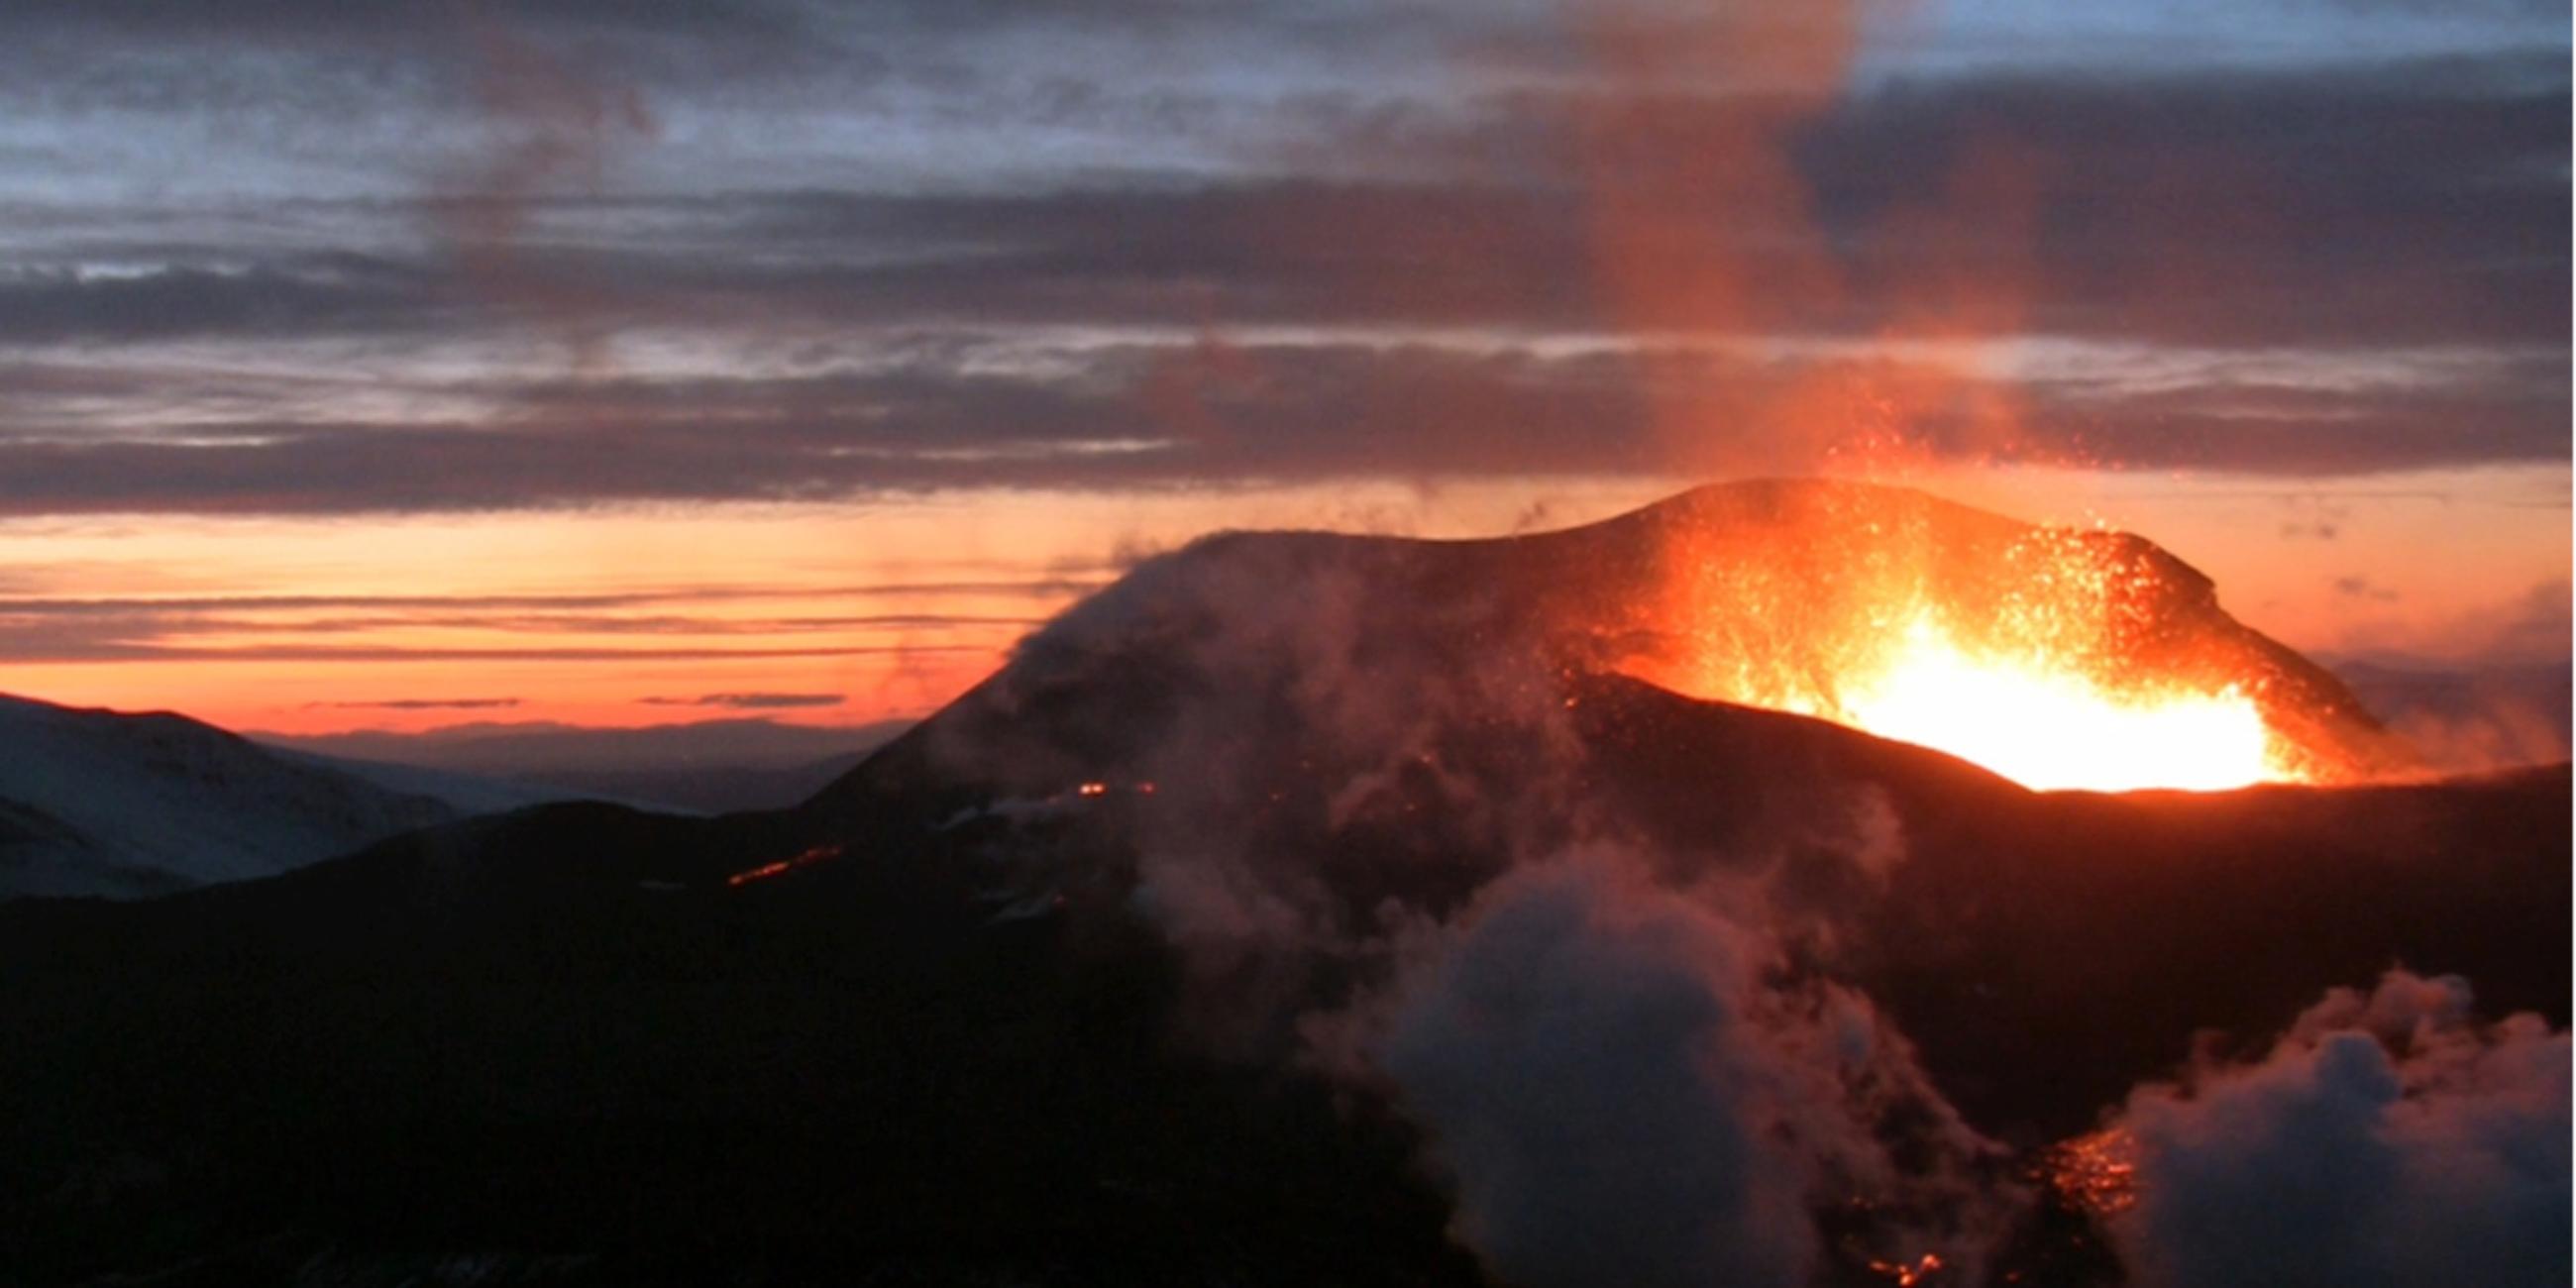 Ausbrechender Vulkan Eyjafjallajökull in Island 2010 mit rot glühender Lava.